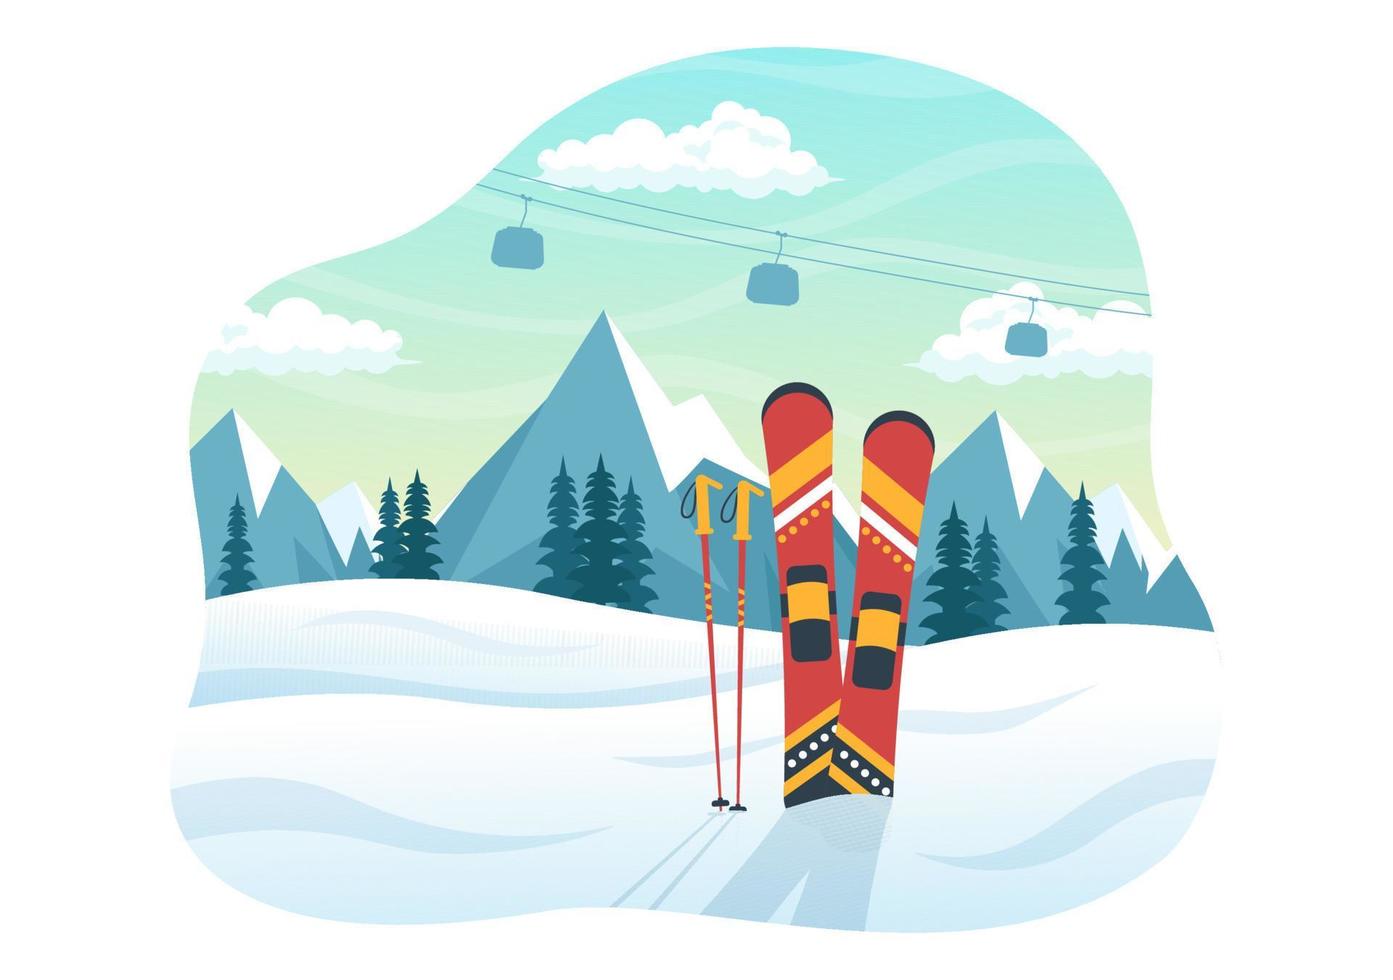 ilustración de esquí con esquiadores deslizándose cerca de la montaña yendo cuesta abajo en la estación de esquí en actividades deportivas de invierno planas plantillas dibujadas a mano de dibujos animados vector